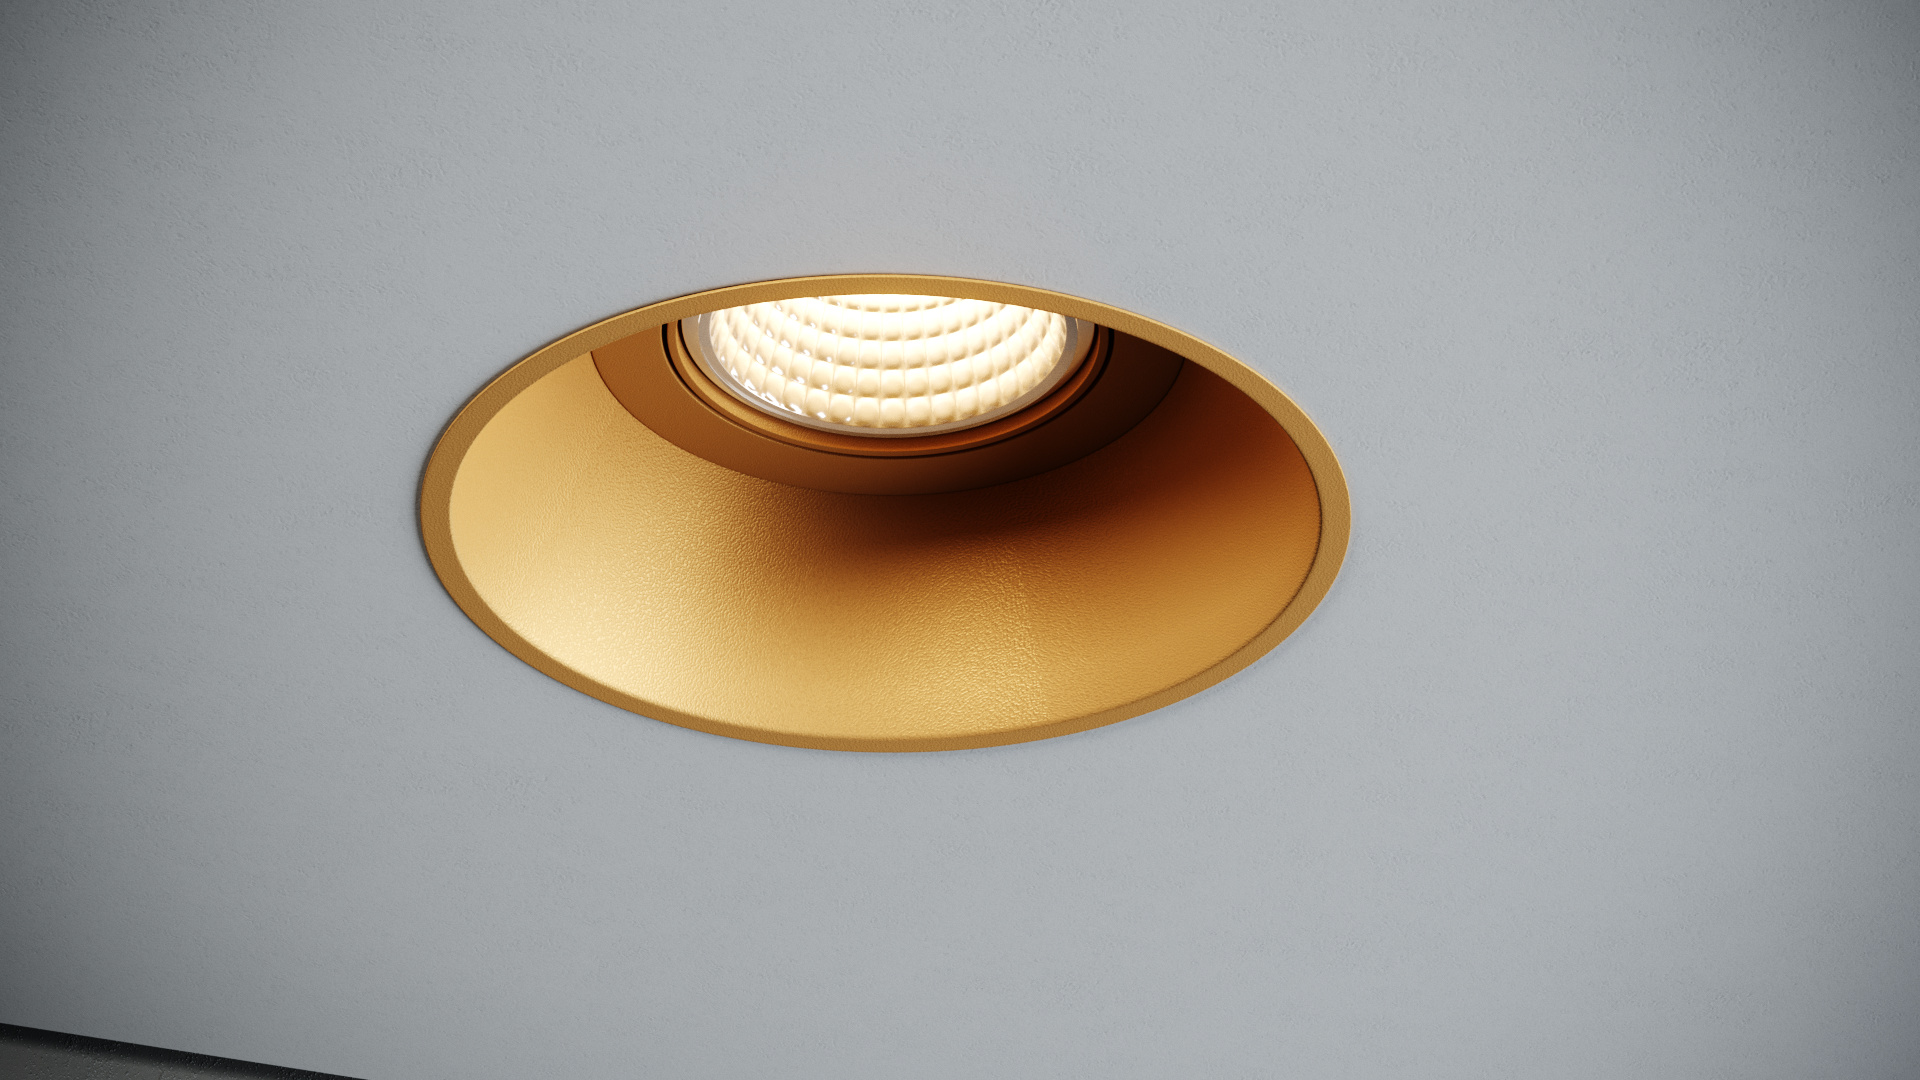 Quest Light Светильник встраиваемый, поворотный, золотой, под лампу GU10, IP20 CLASSIC LD gold